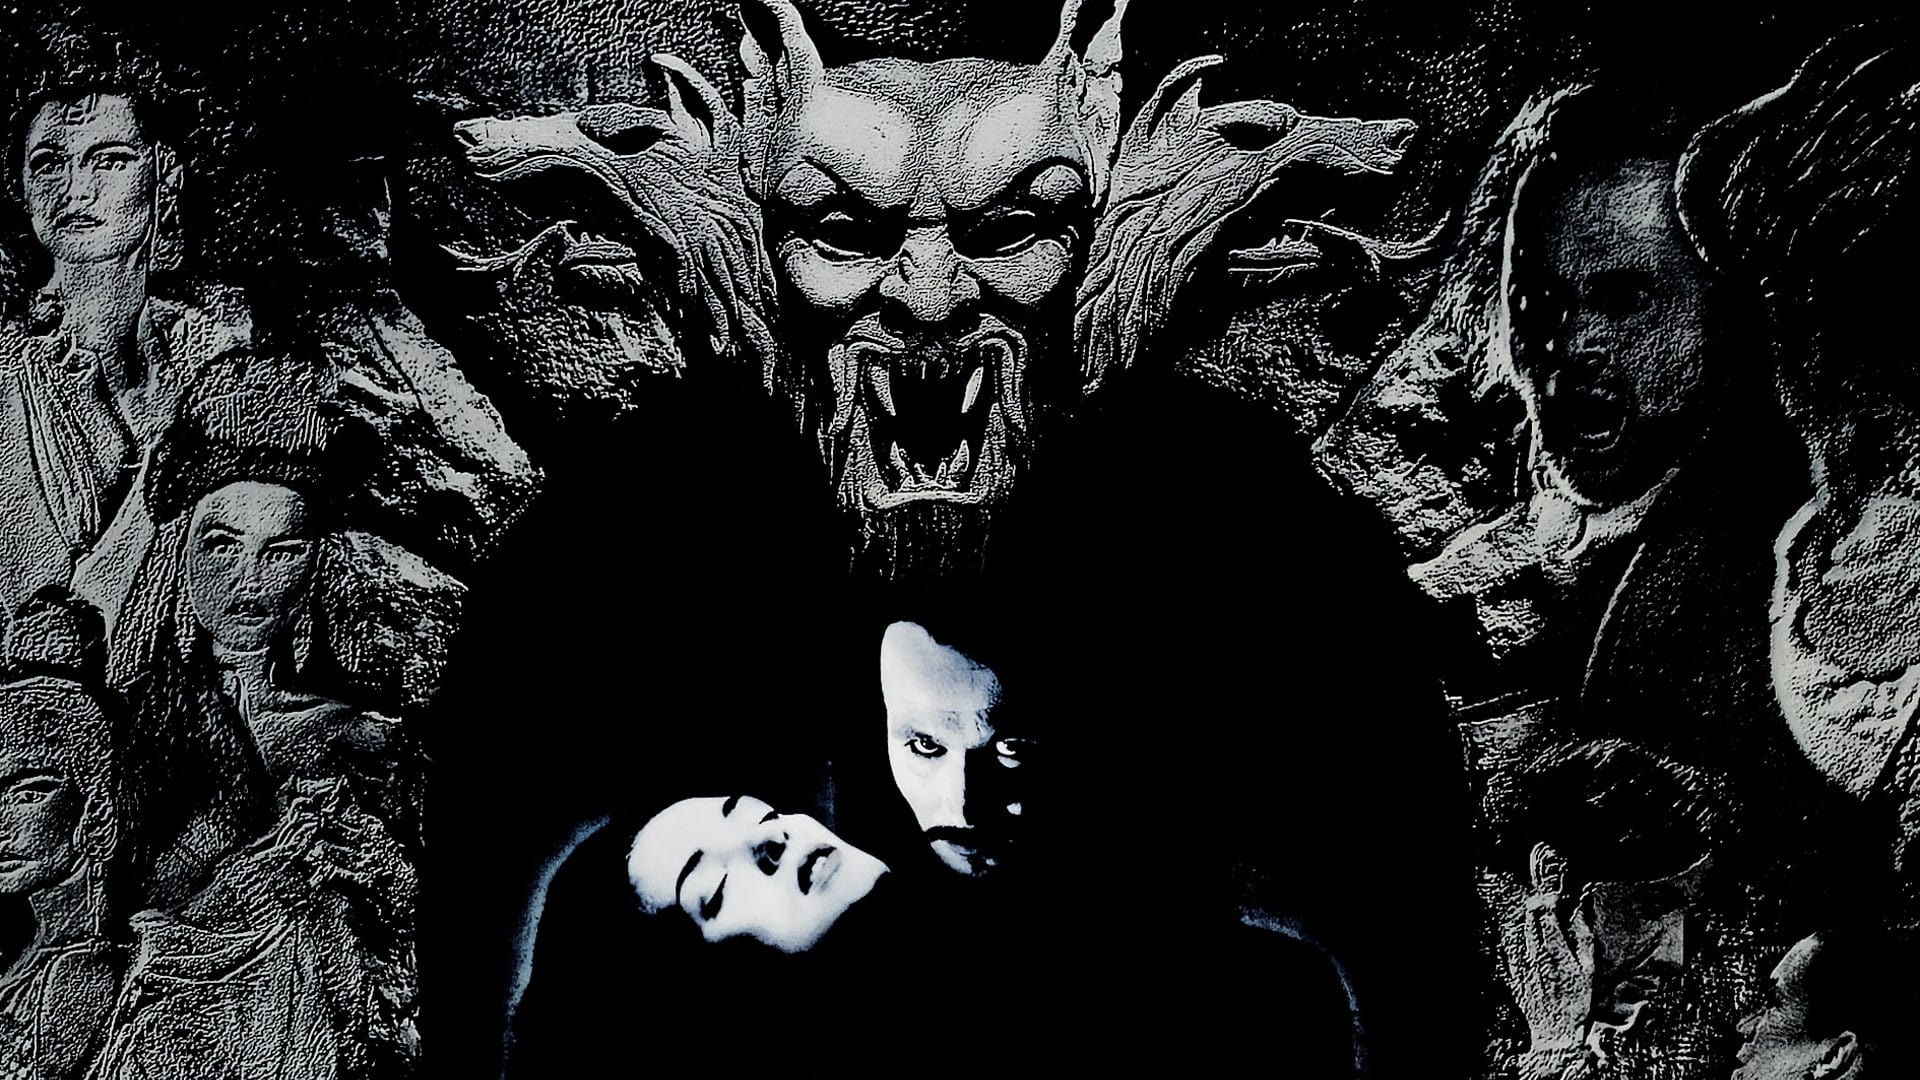 Poster Phim Dracula: Bá tước ma cà rồng (Bram Stoker's Dracula)